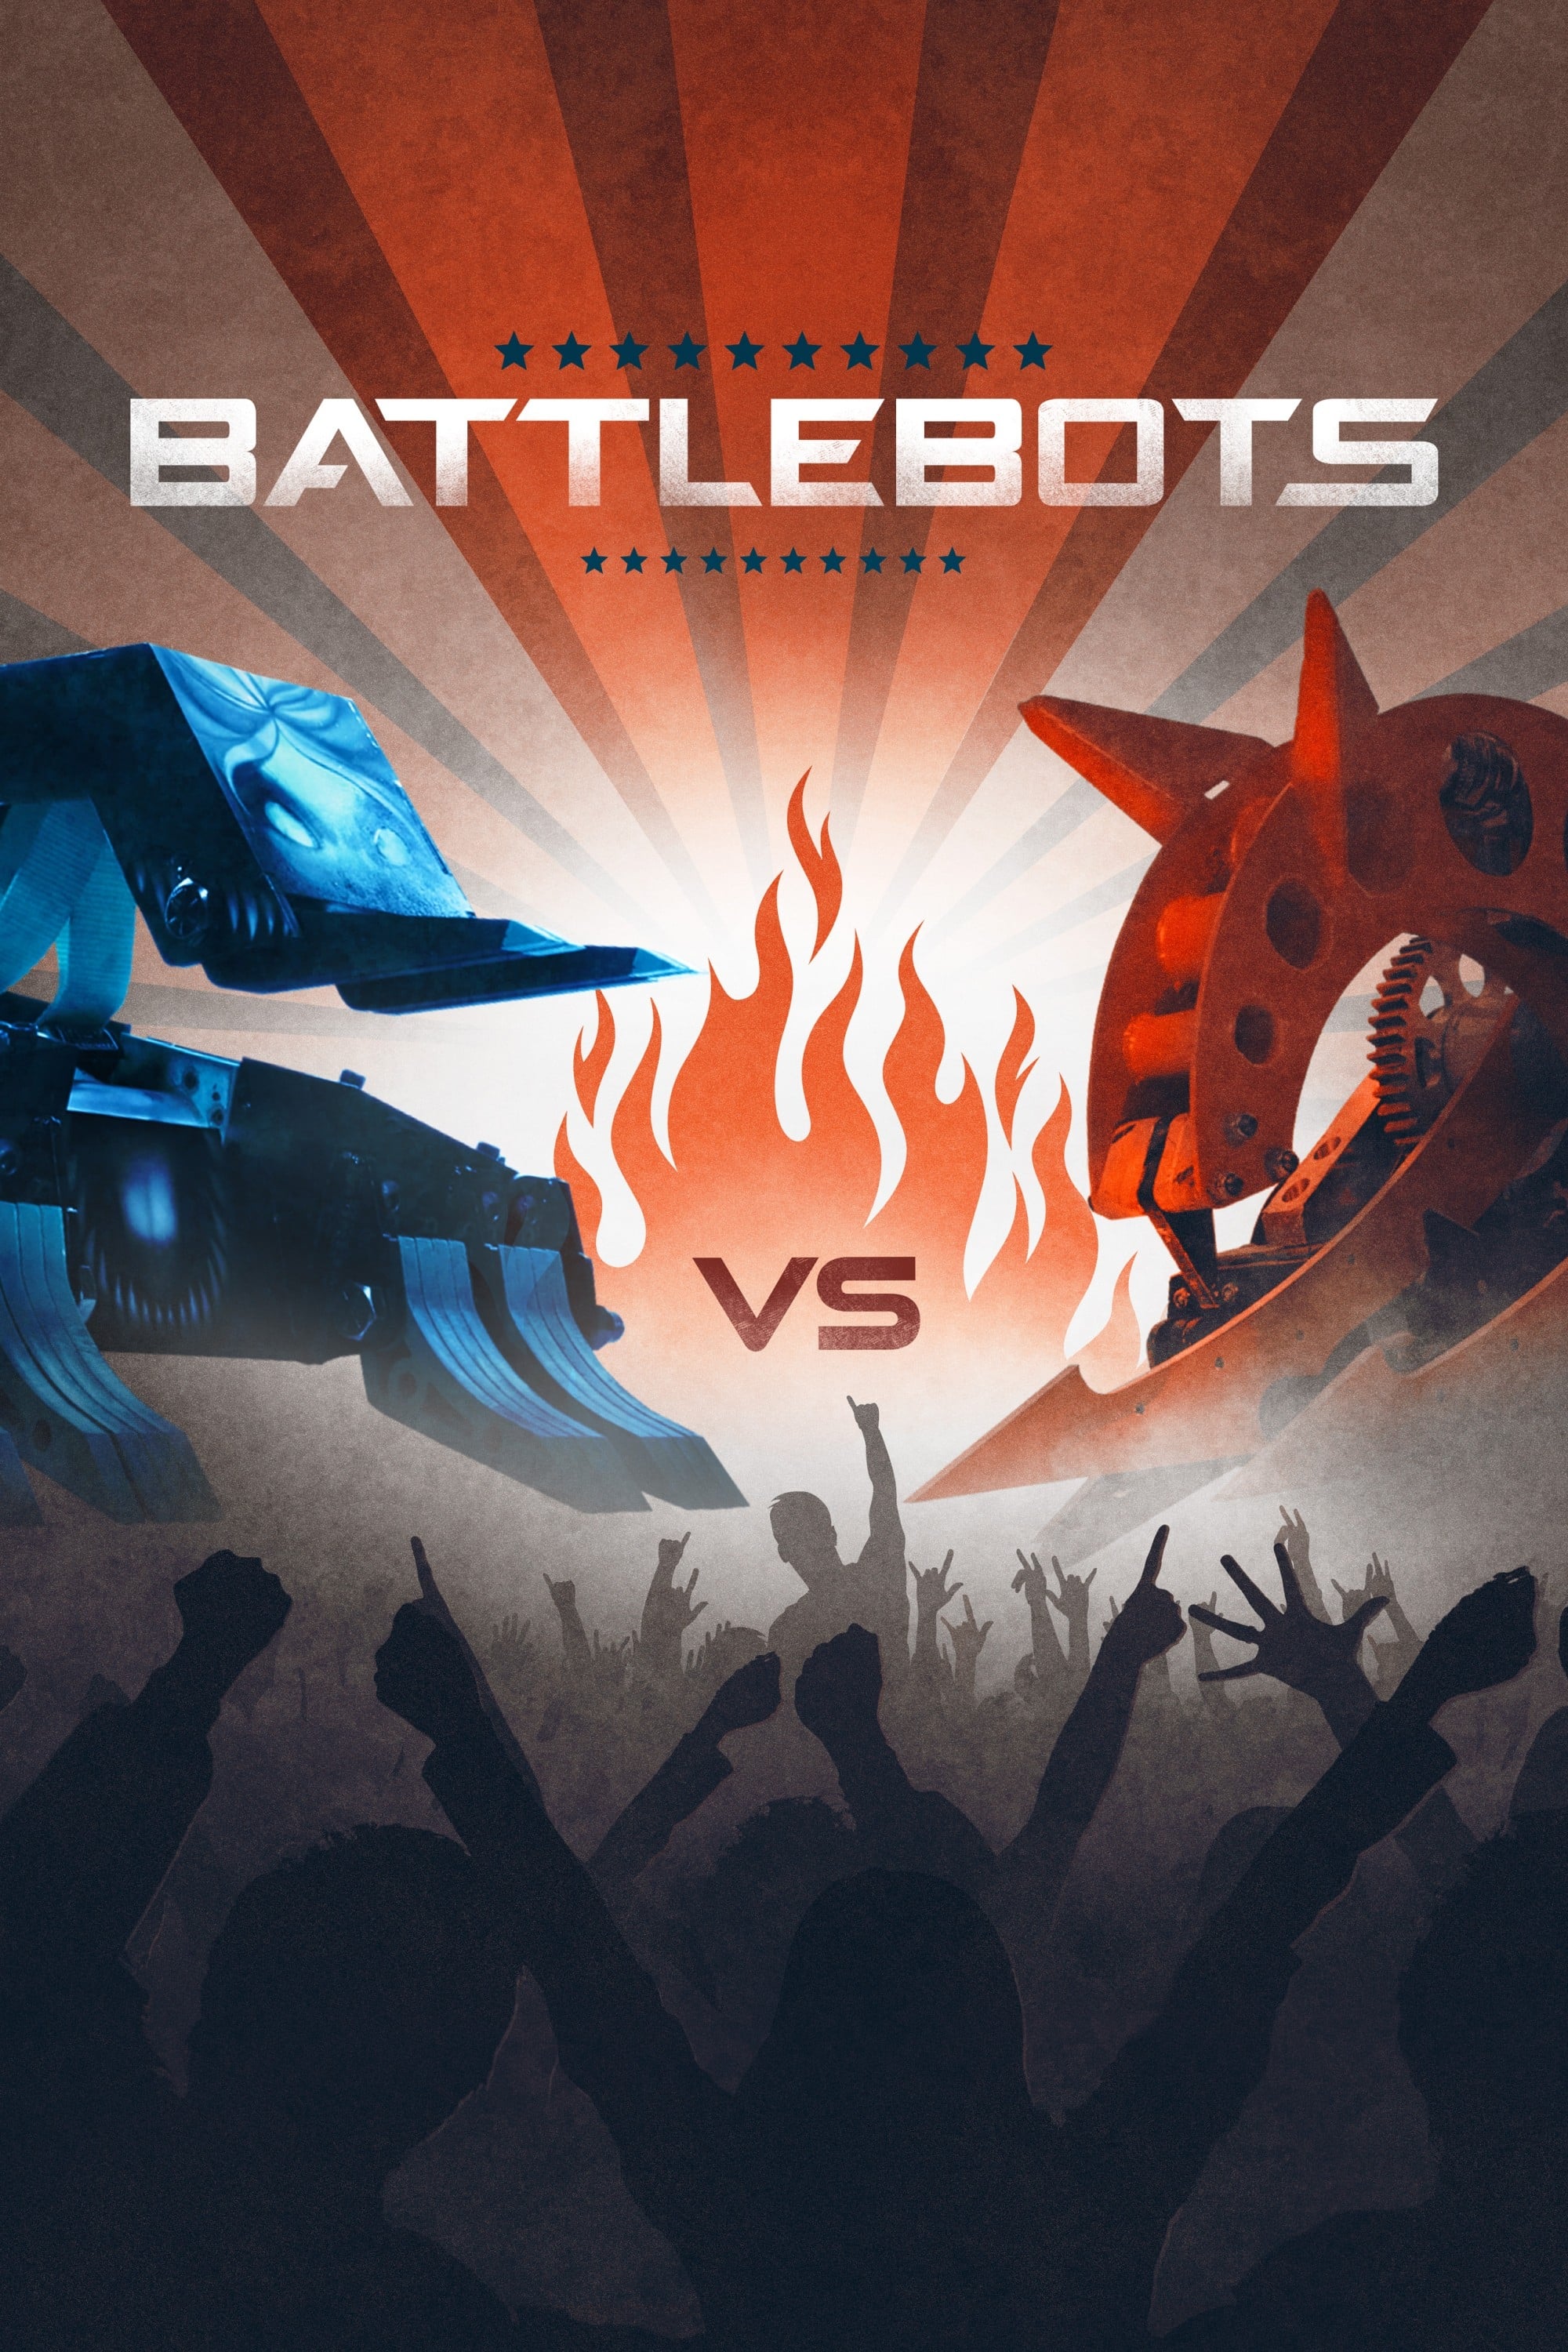 Battlebots samantha ponder ABC's 